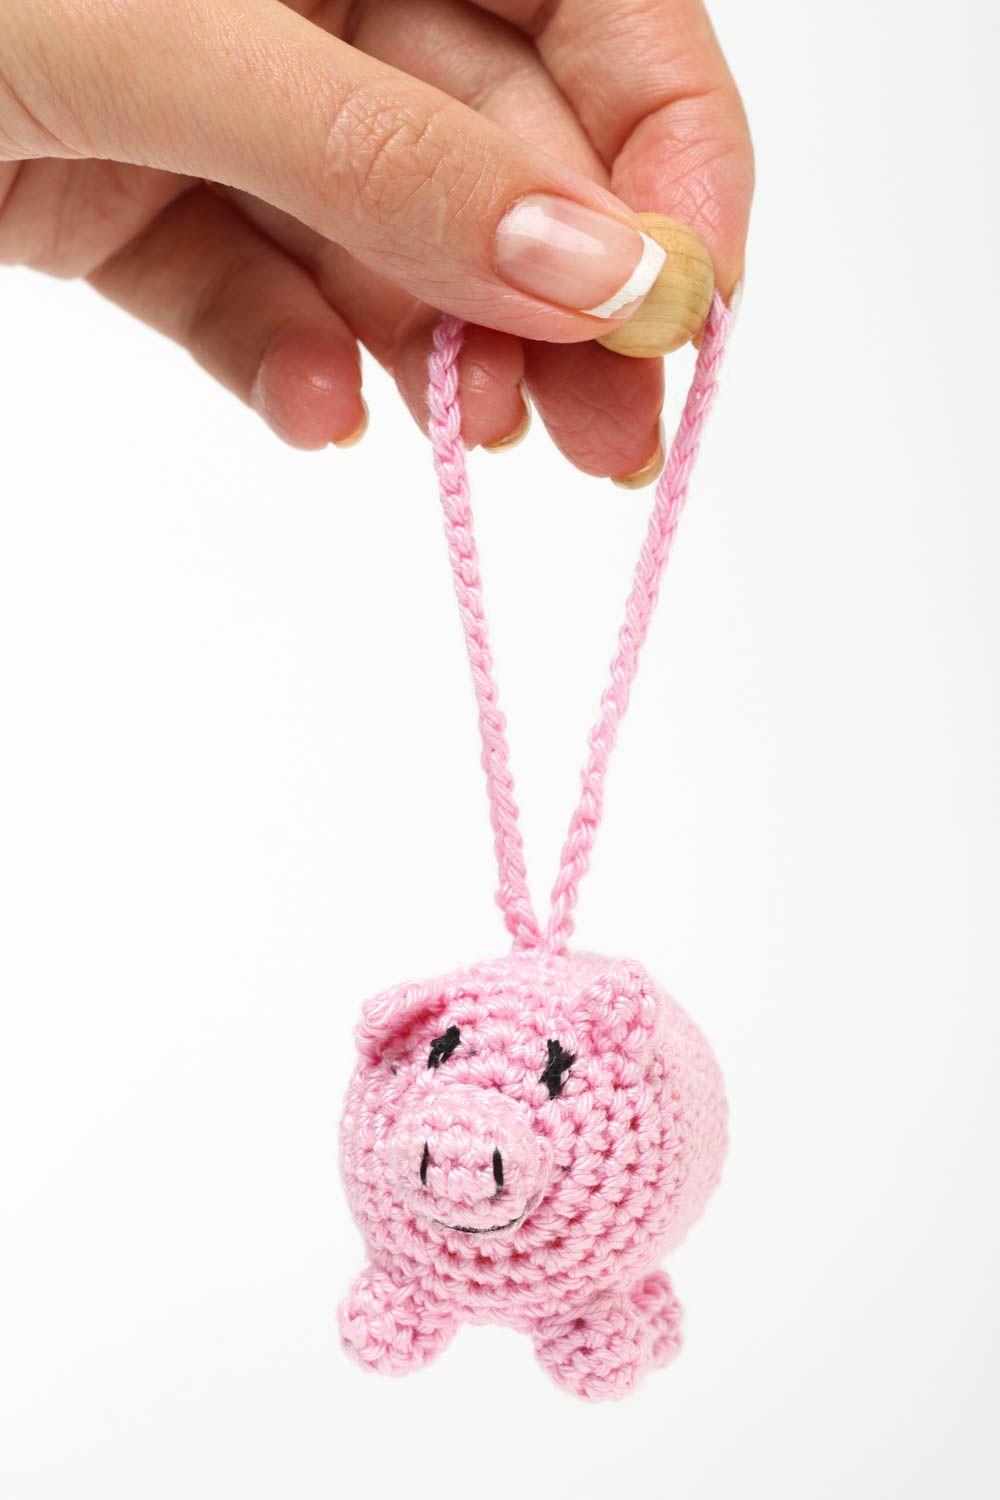 Rattle toy for babies handmade crocheted soft toys nursery decor ideas photo 5